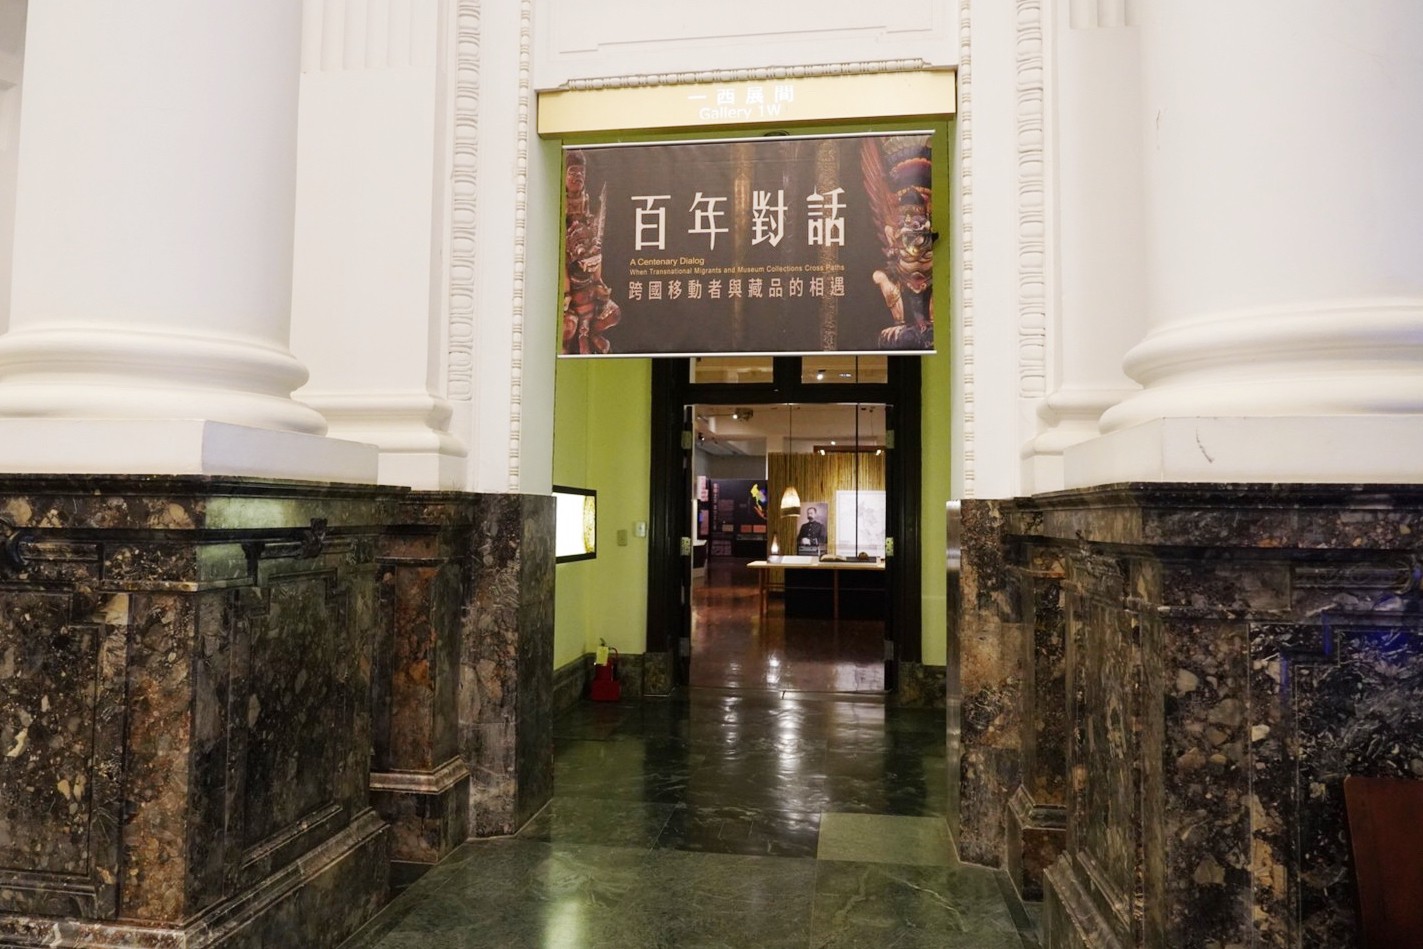 台灣博物館,台北好玩,台北景點,恐龍展,水怪,百年對話,親子景點